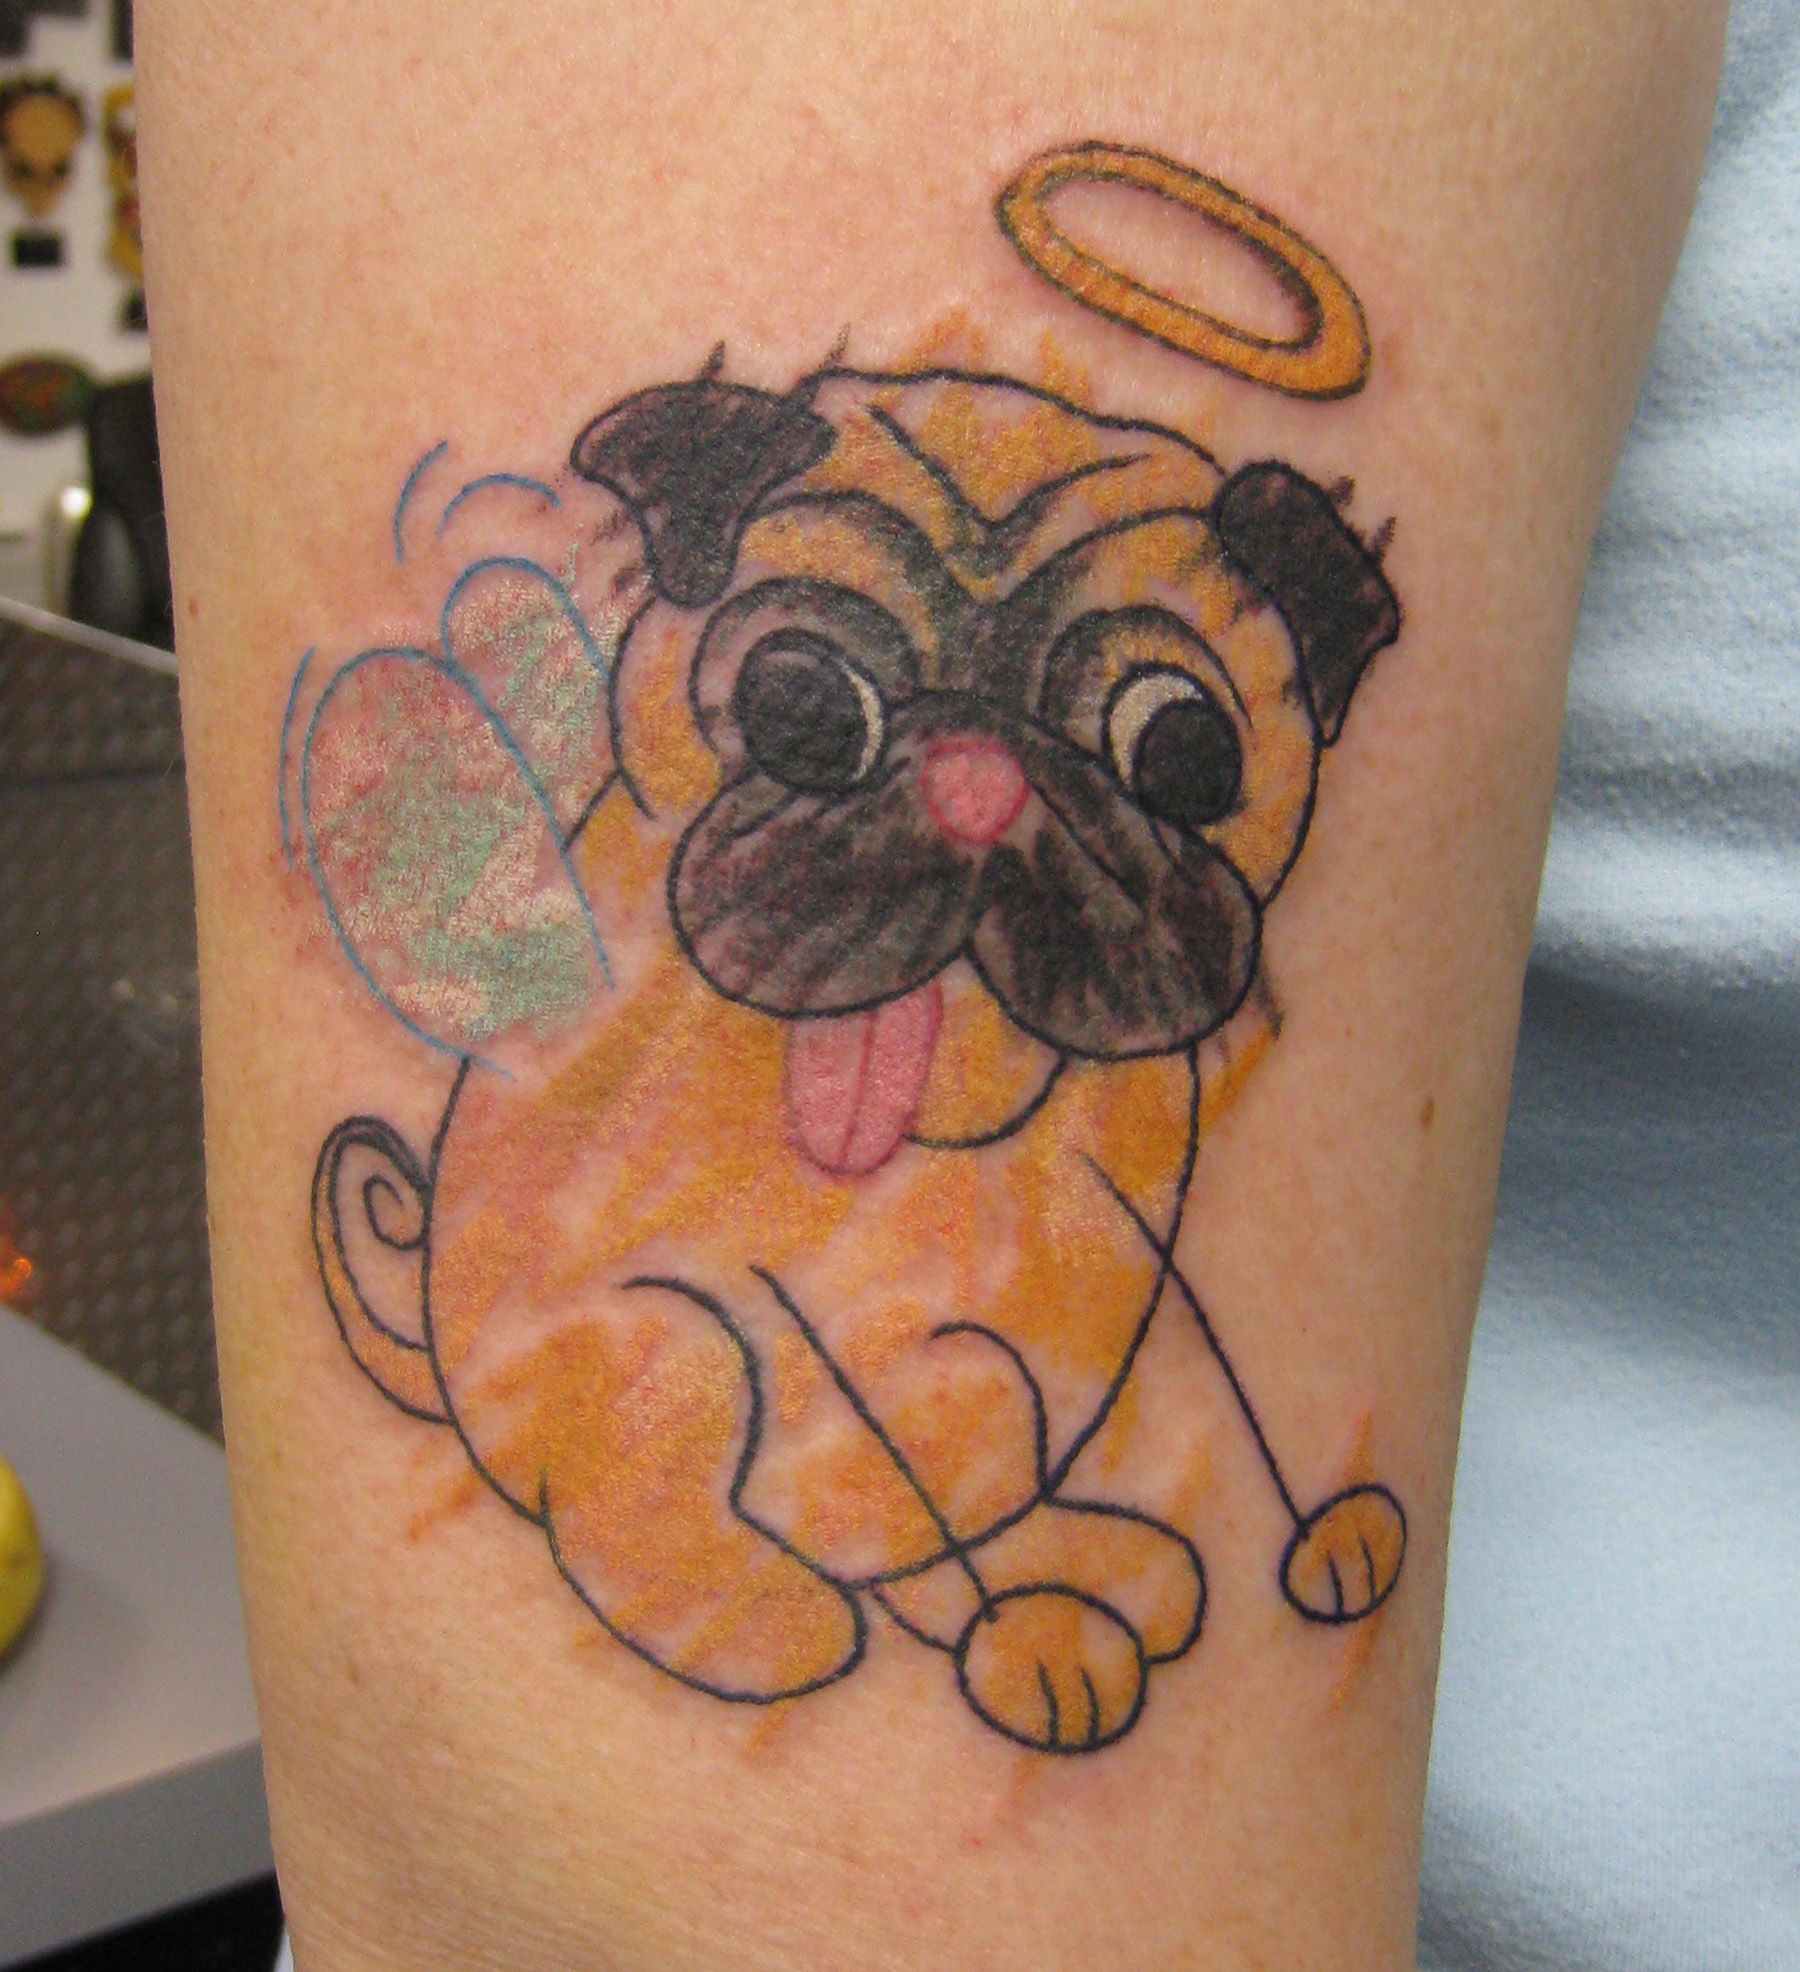 Popular Animal Tattoo Designs For Women - SheClick.com